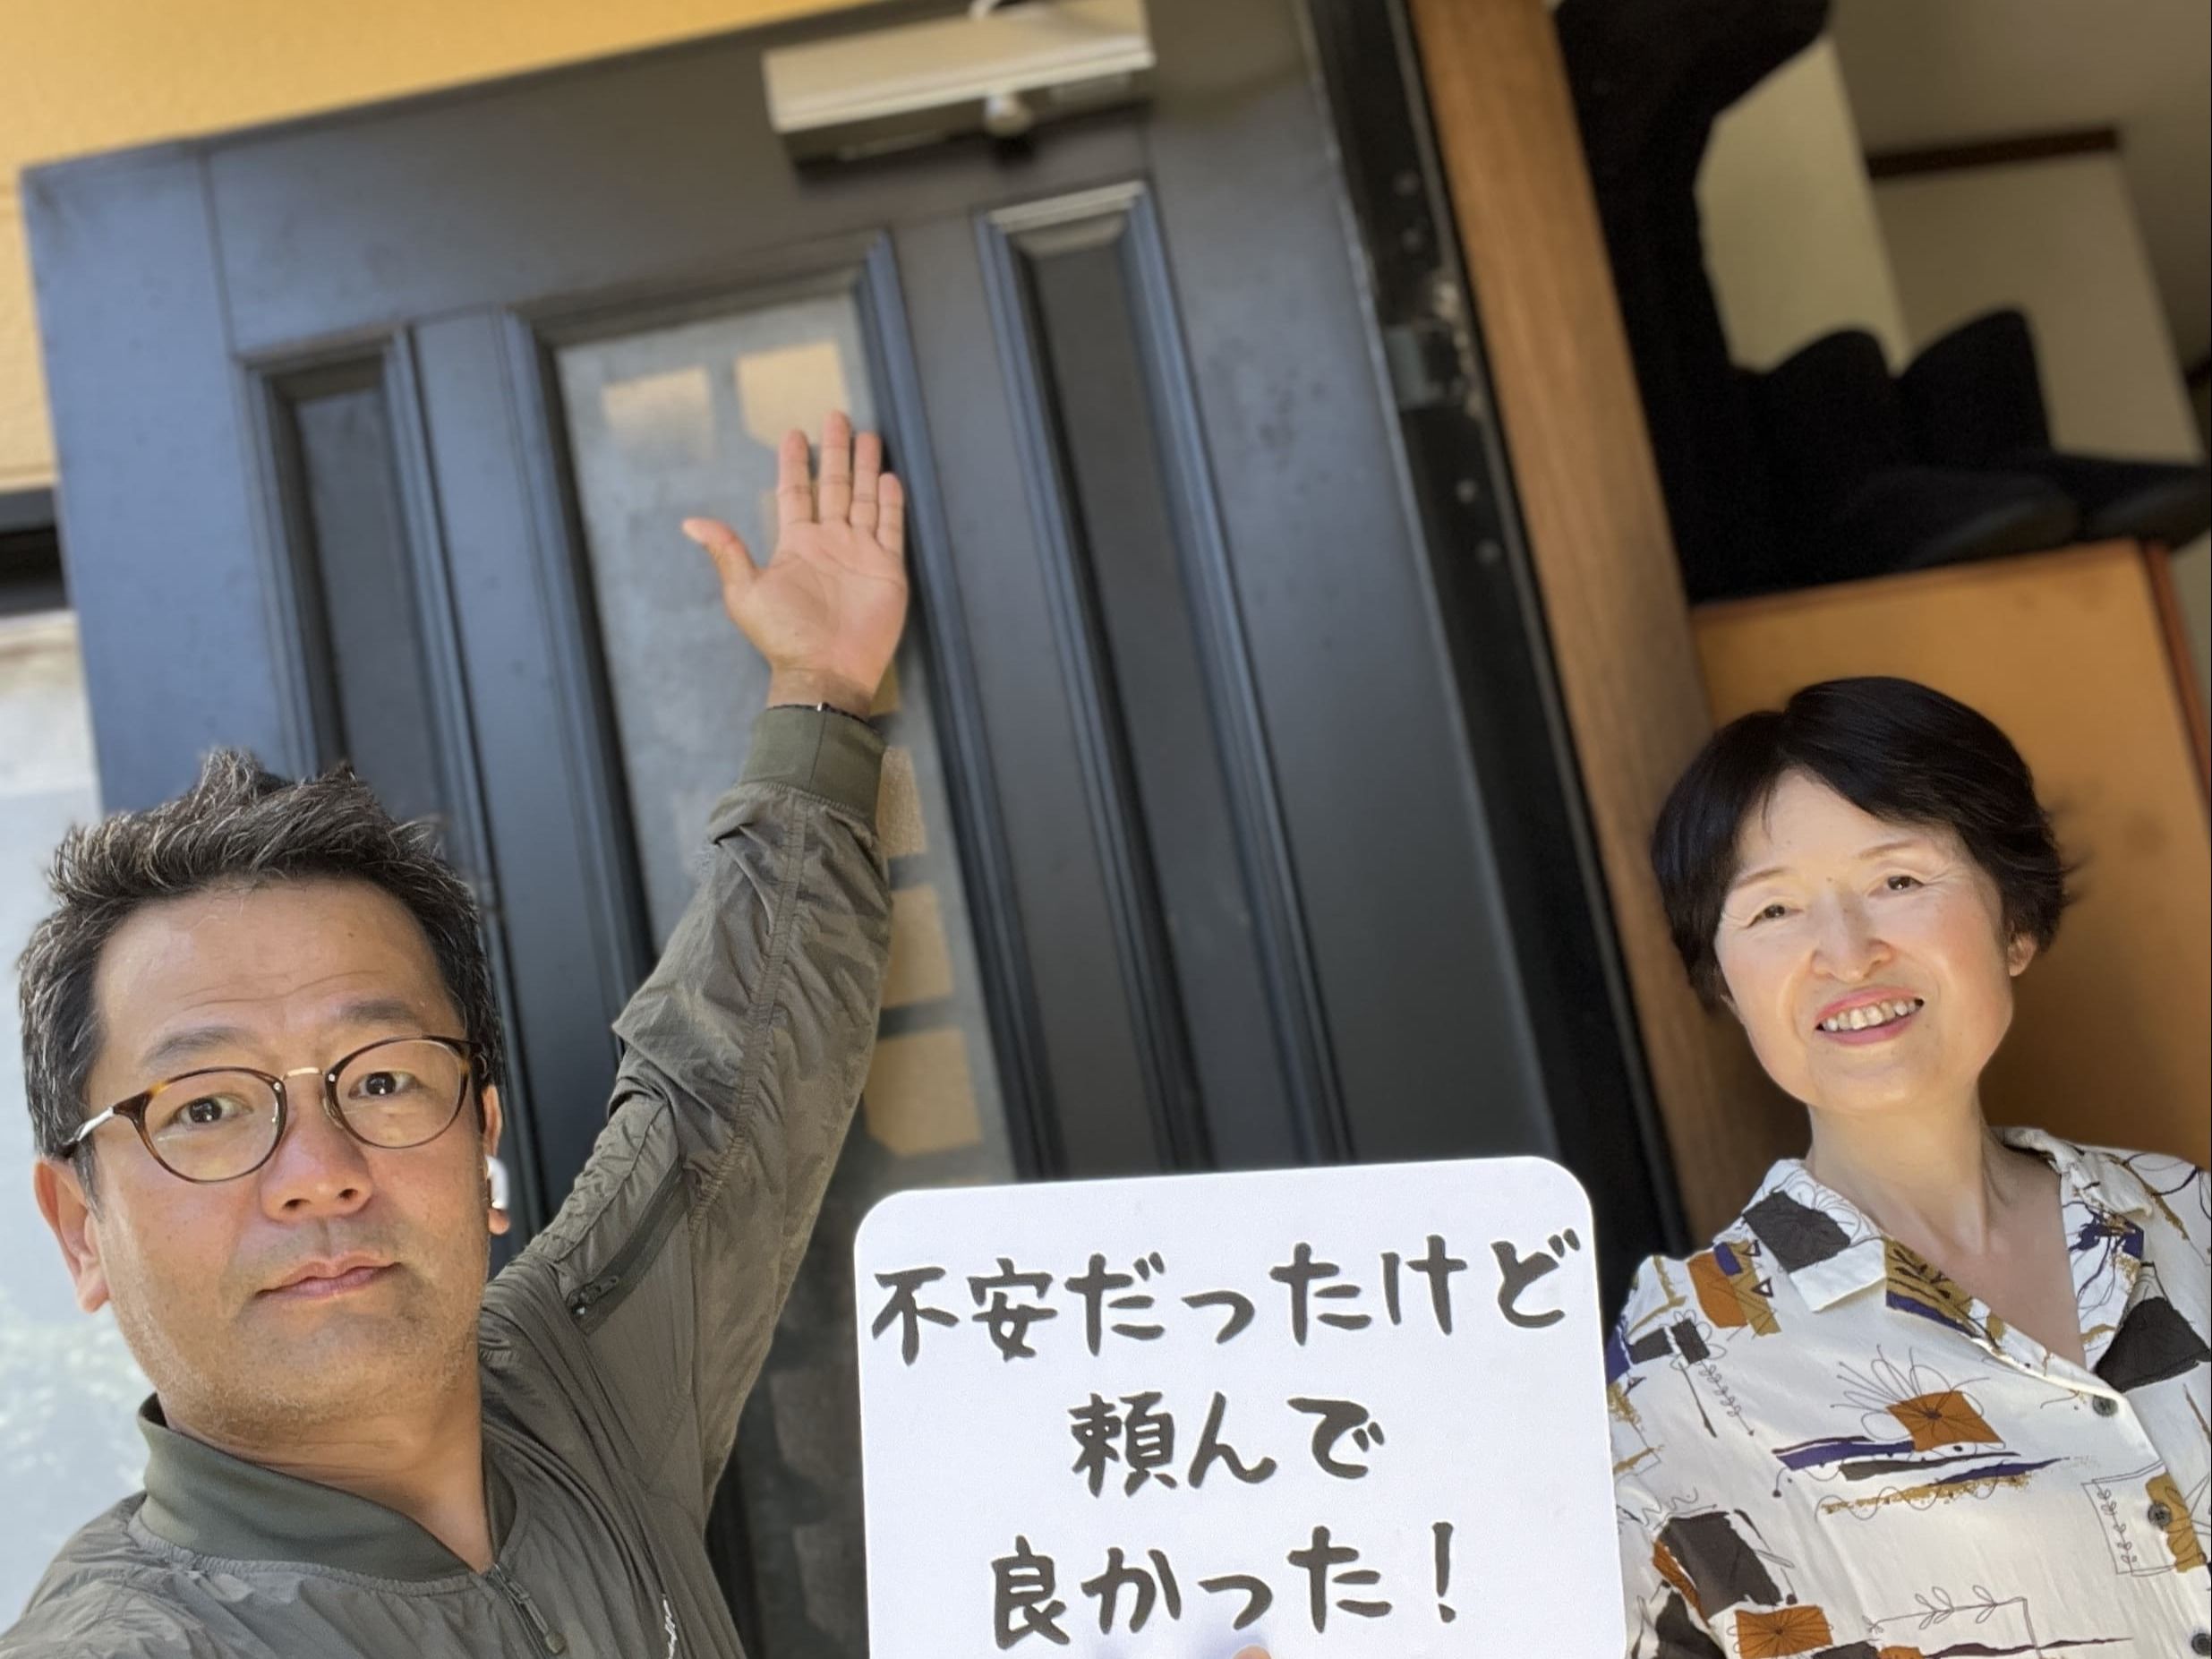 【武蔵野市地域】カギとドア修理コバヤシの店内・外観画像3